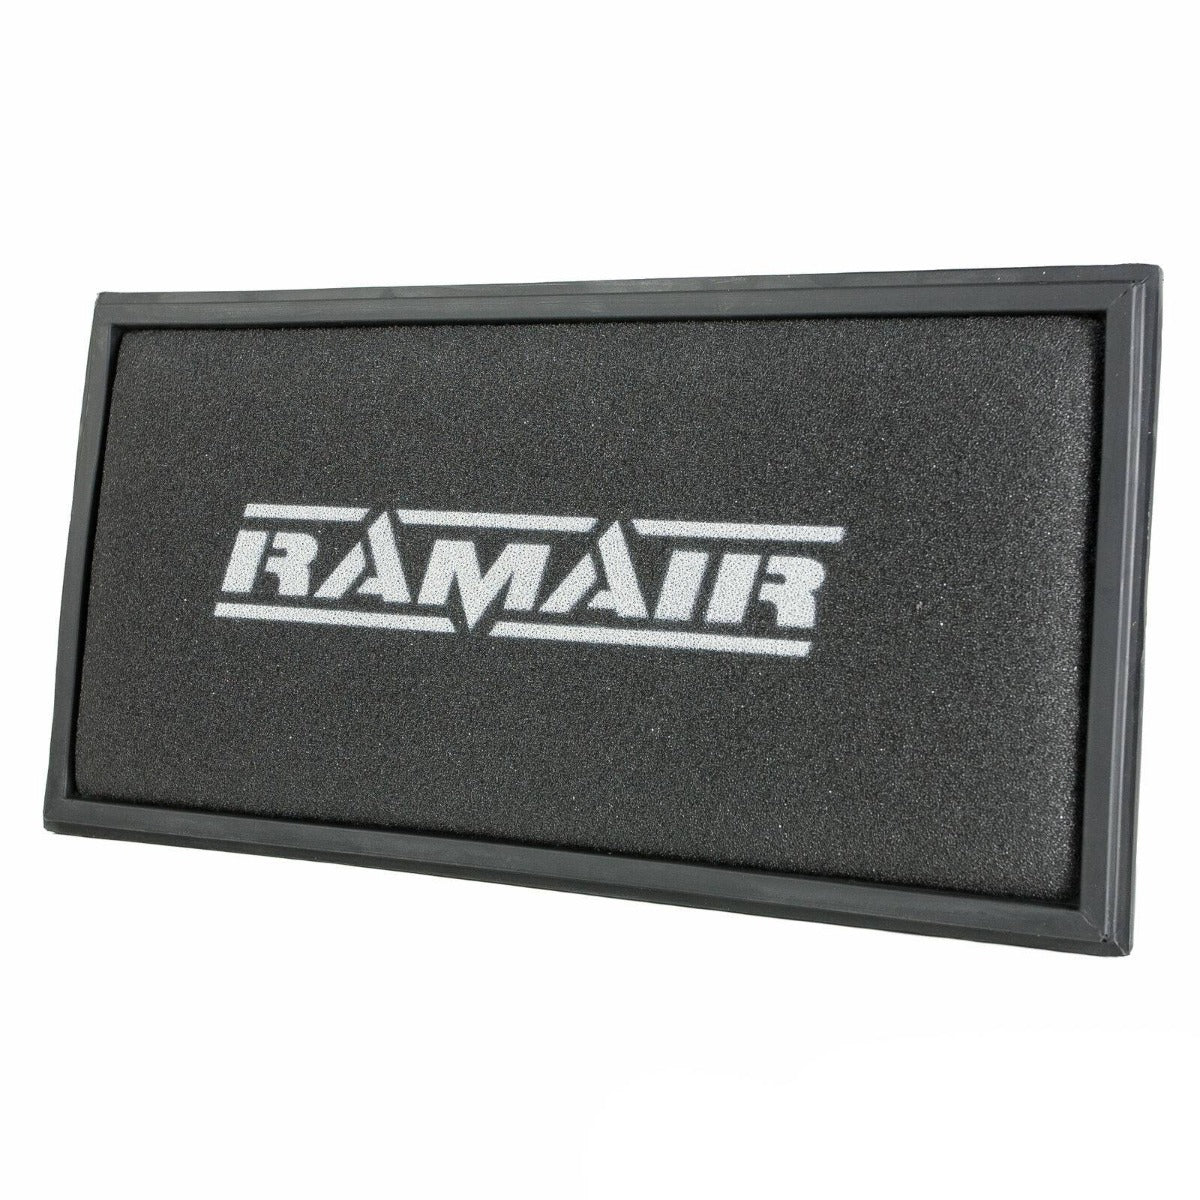 RAMAIR Air Filter for Volkswagen Golf Mk4 1.6 08/97 -